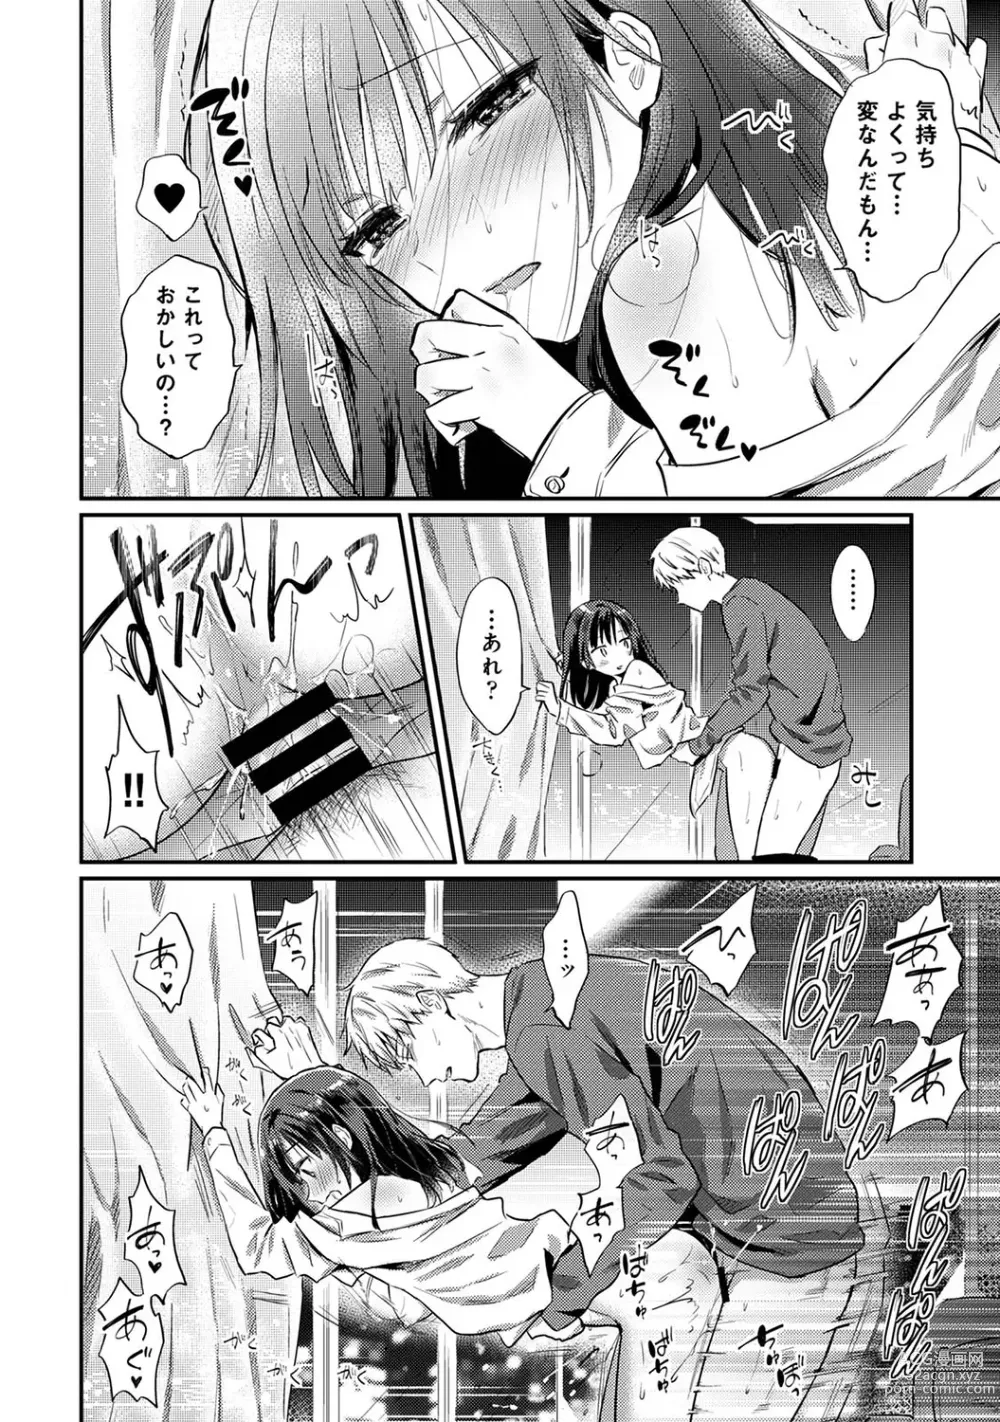 Page 1419 of manga Zesshokukei Danshi, Seiyoku o Shiru Ch. 1-57